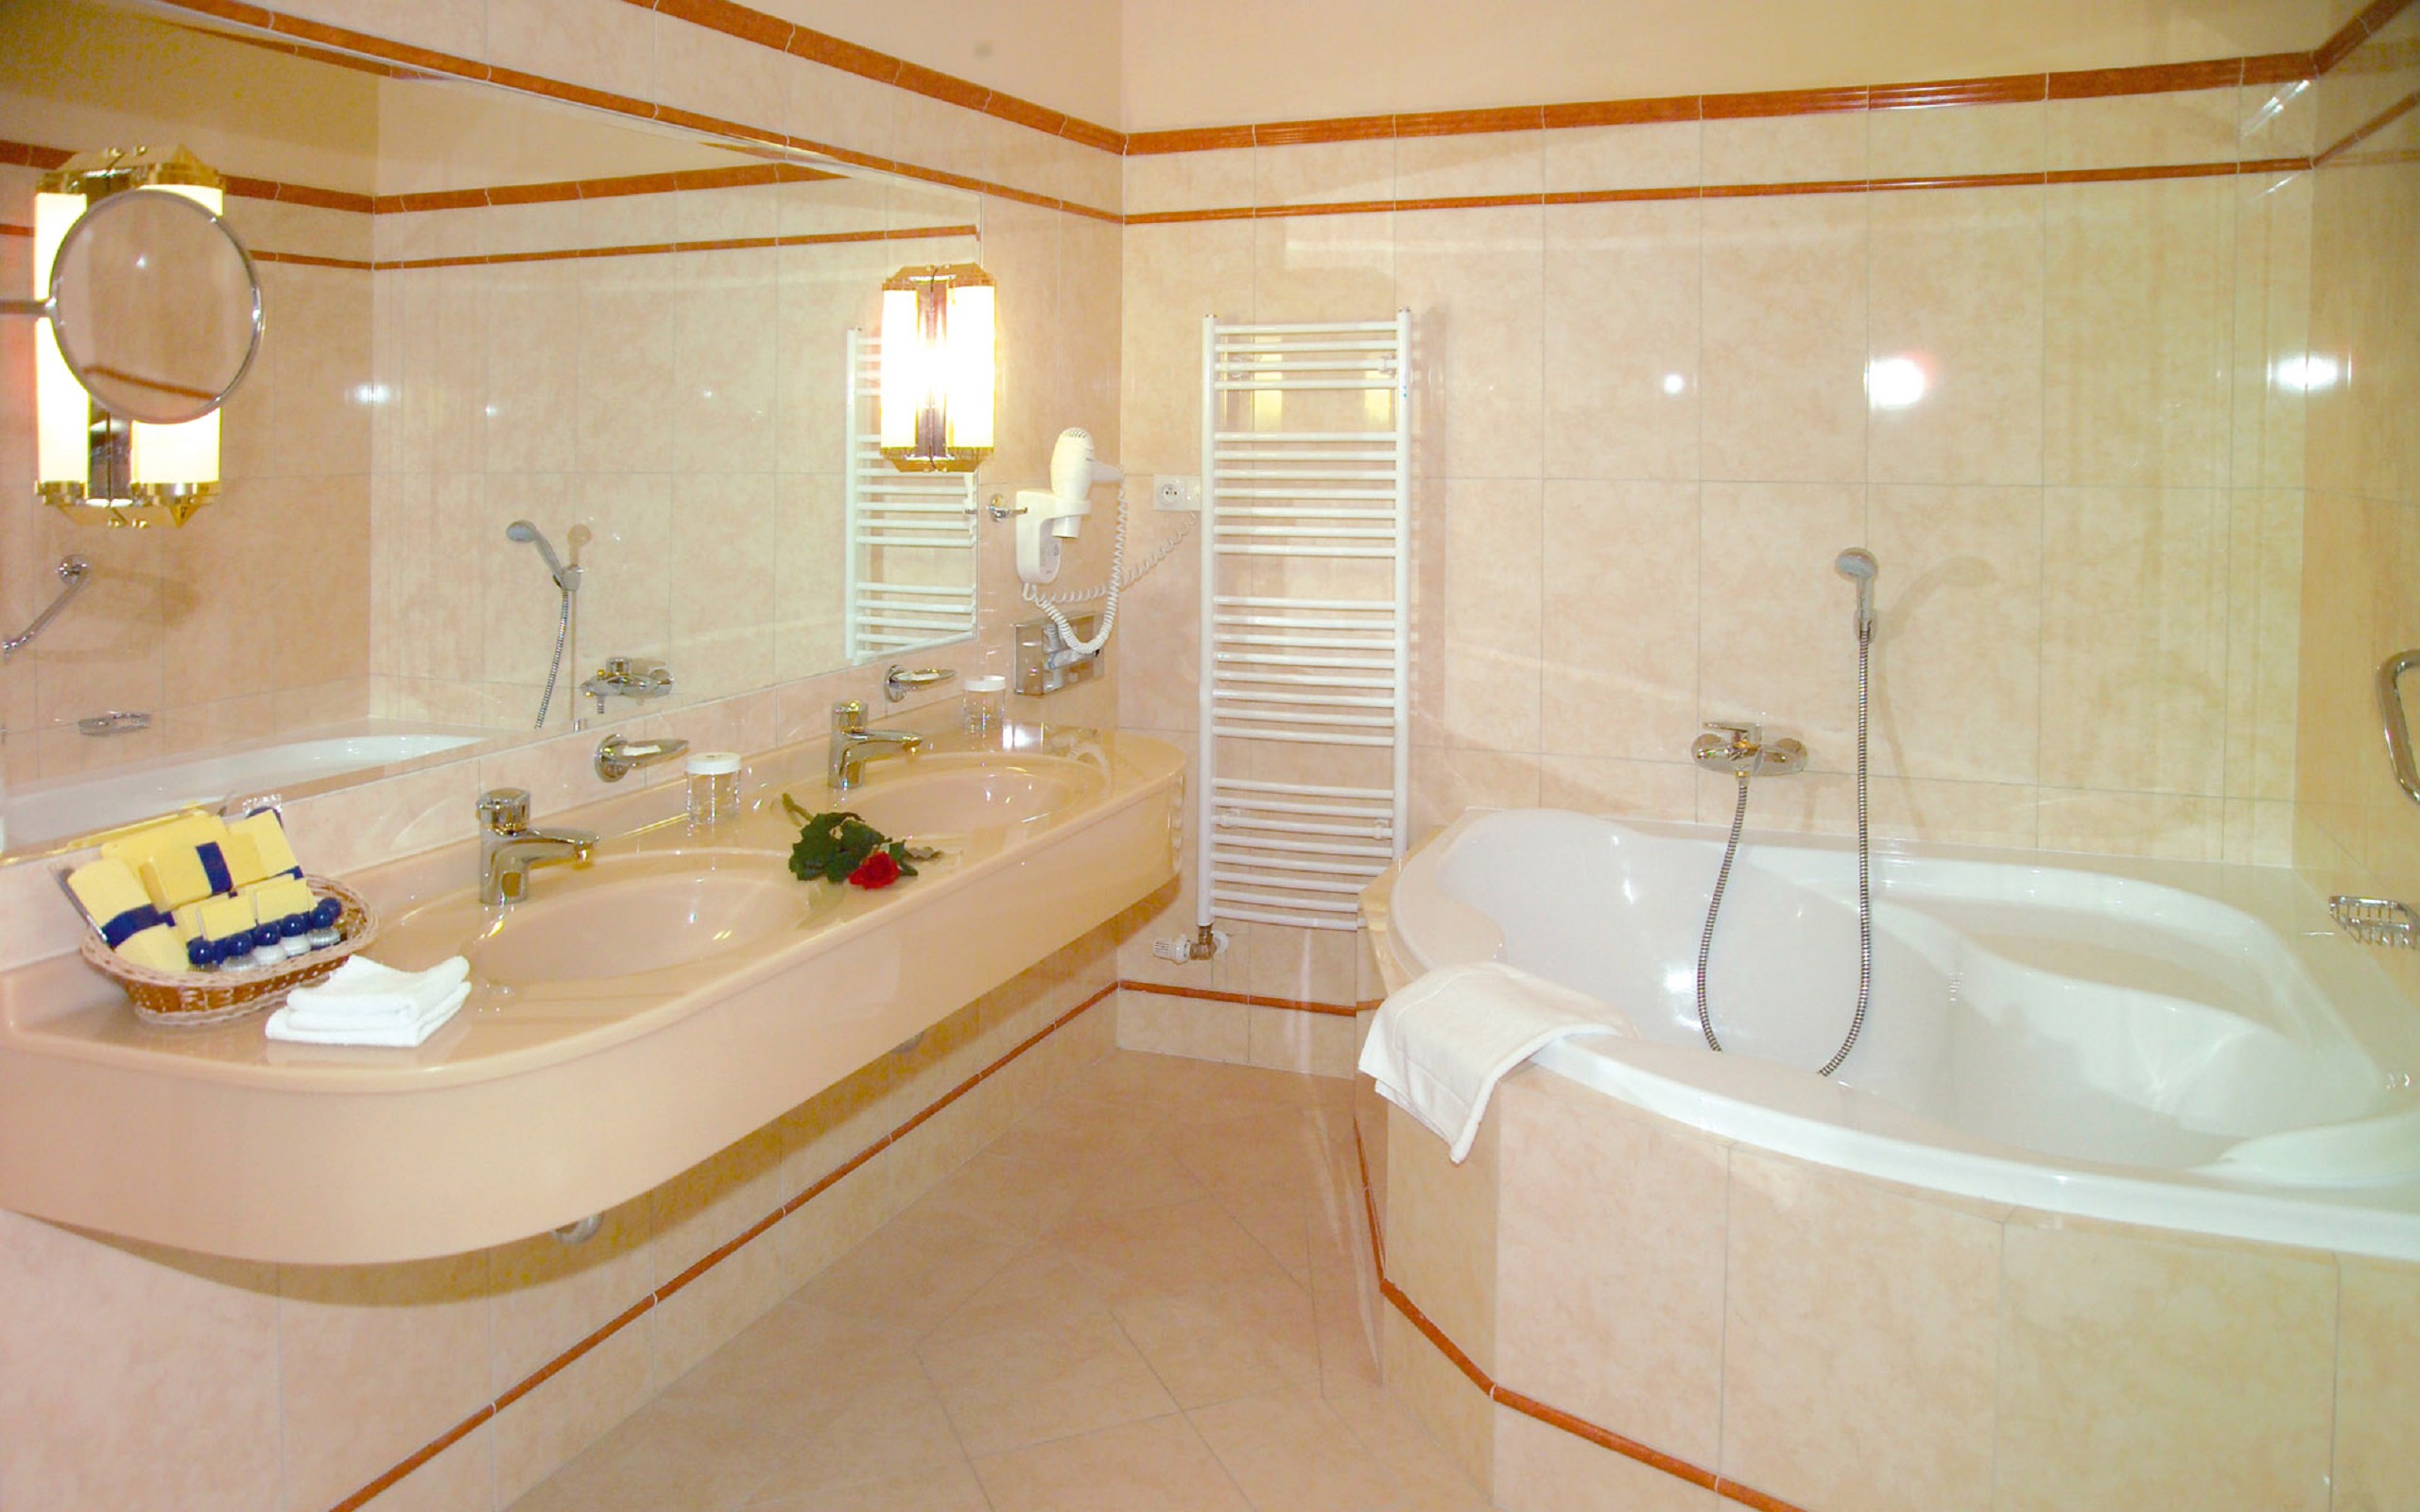 Ванная комната с джакузи в светлых тонах